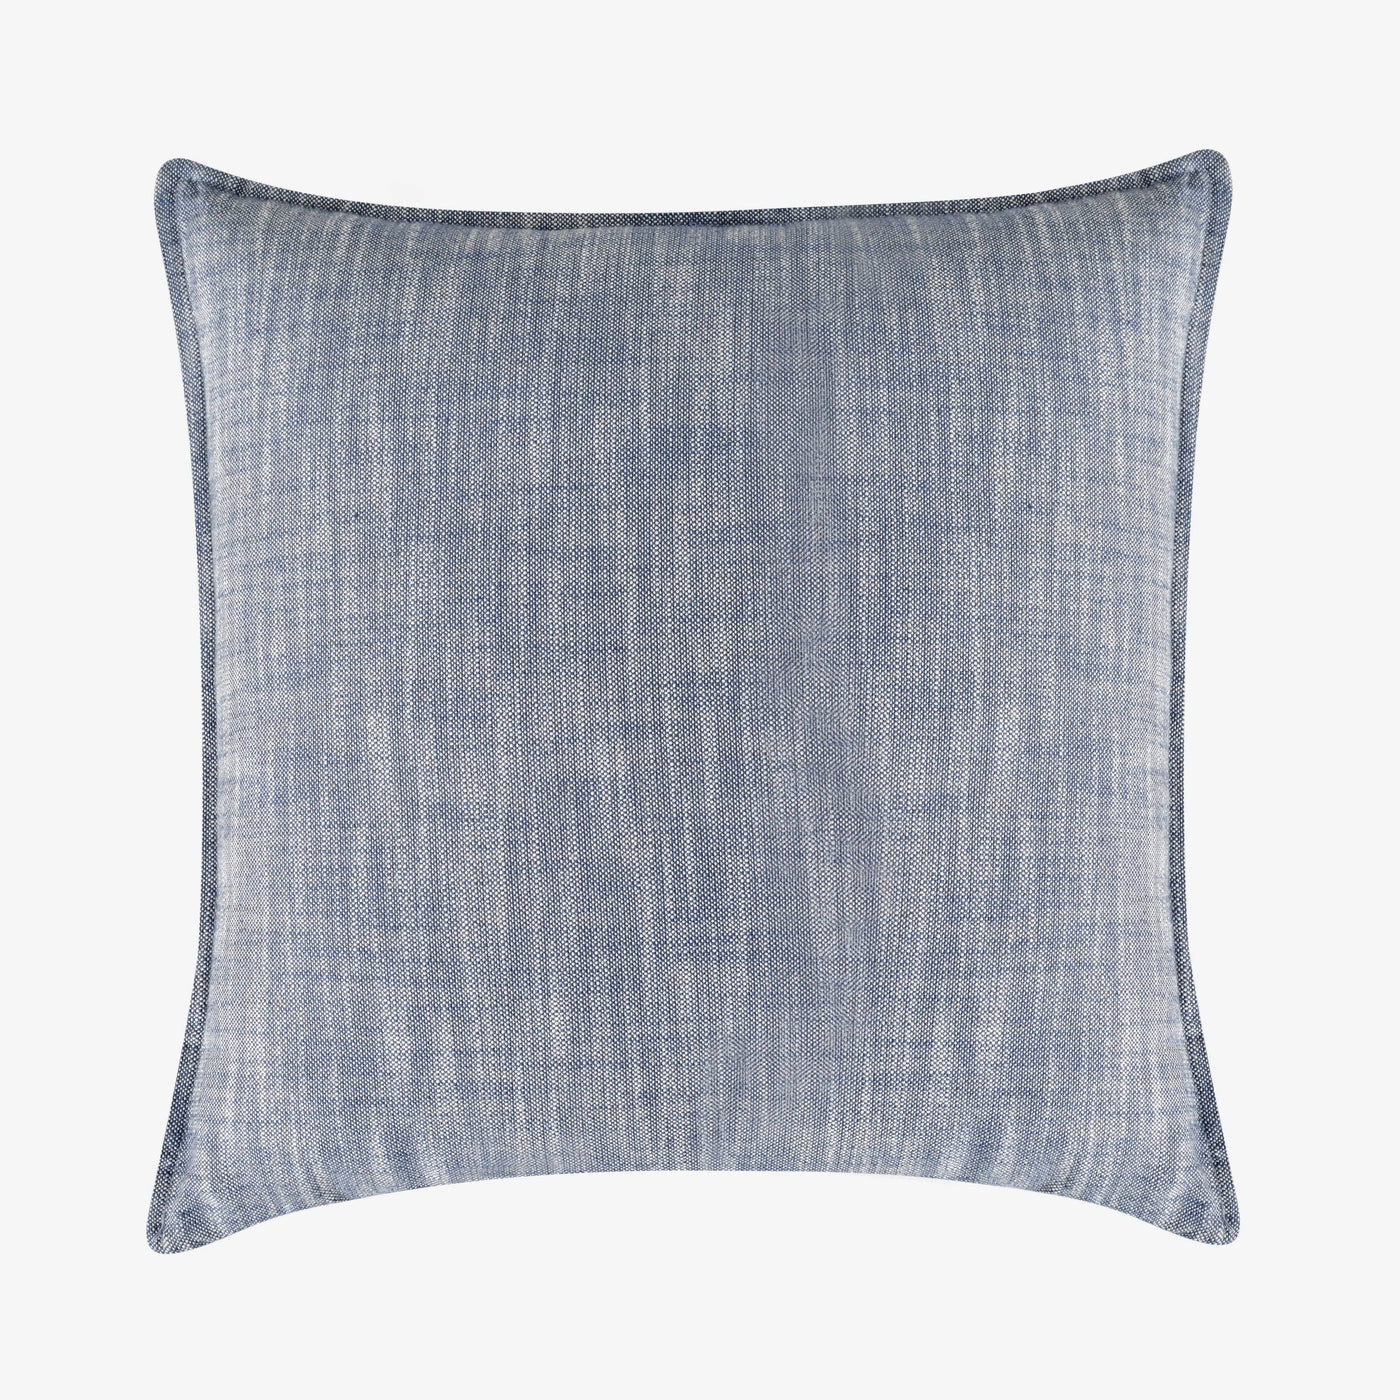 Optical Textured Cushion Cover, Blue, 50x50 cm 1